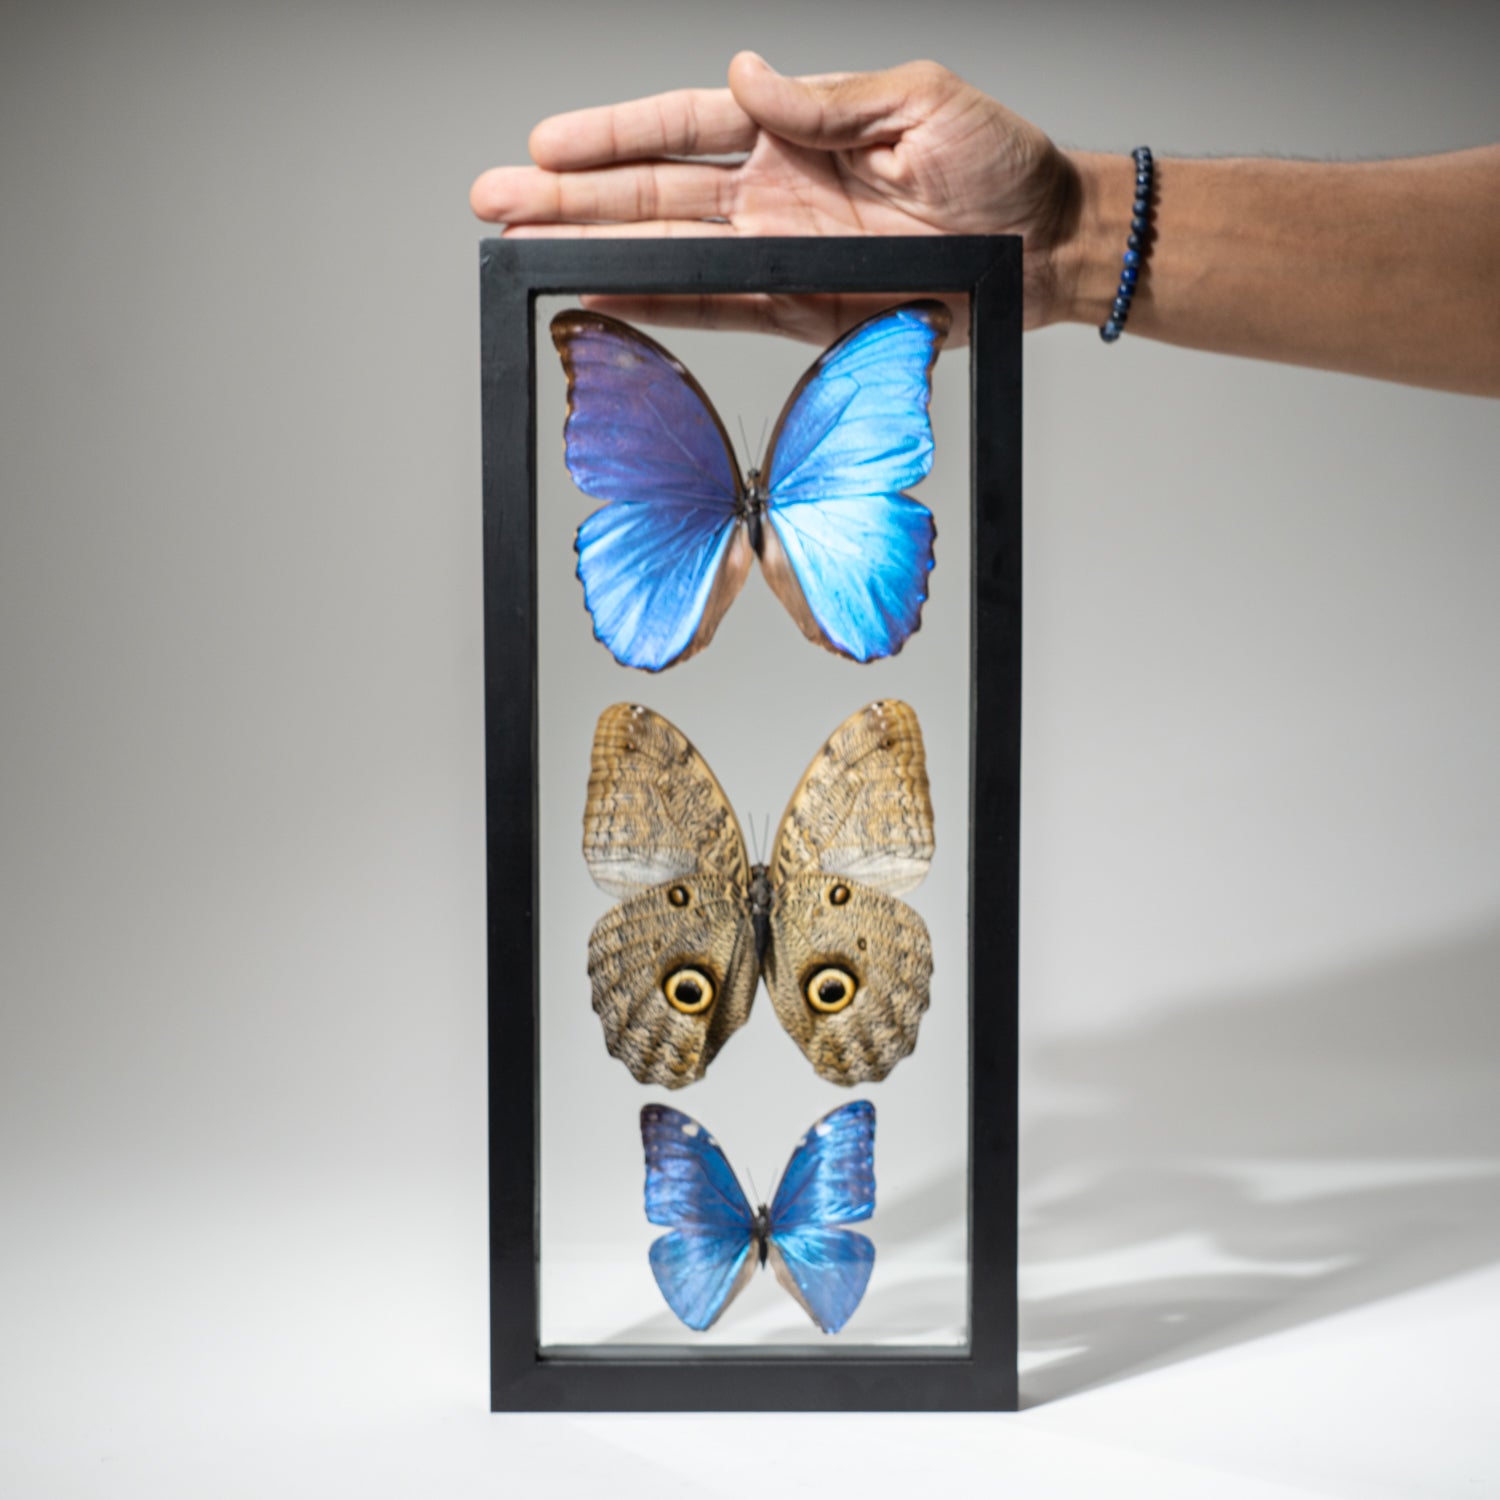 3 Large Genuine Butterflies in Black Display Frame- Morpho Didius, Morpho Marcus, Caligo Eurilochus